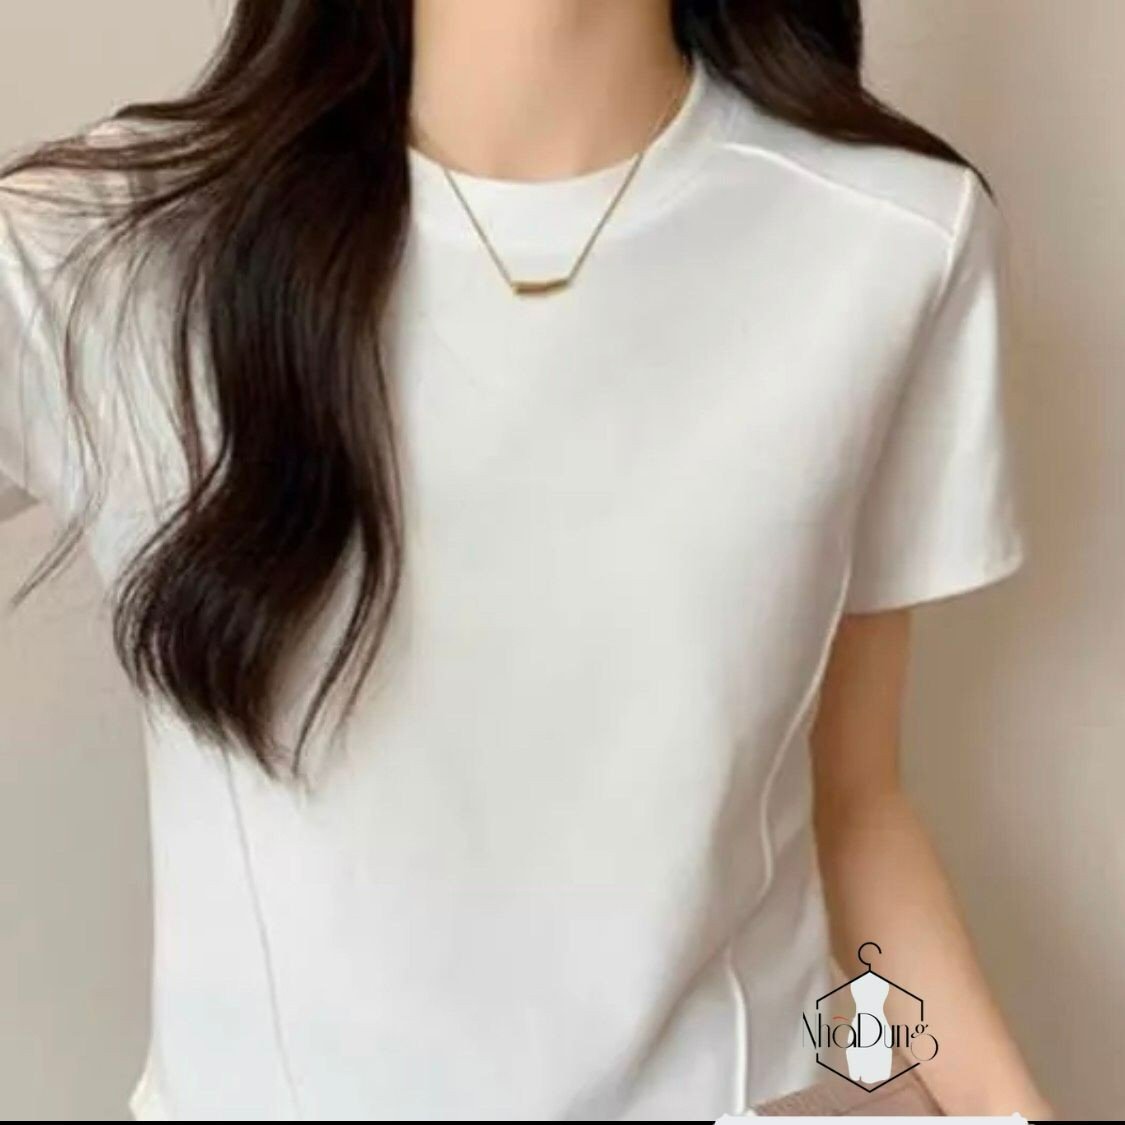 Áo thun baby tee nữ viền trơn 100% Cotton tay ngắn mùa hè mát mẻ hợp thời trang Nhã Dung Store